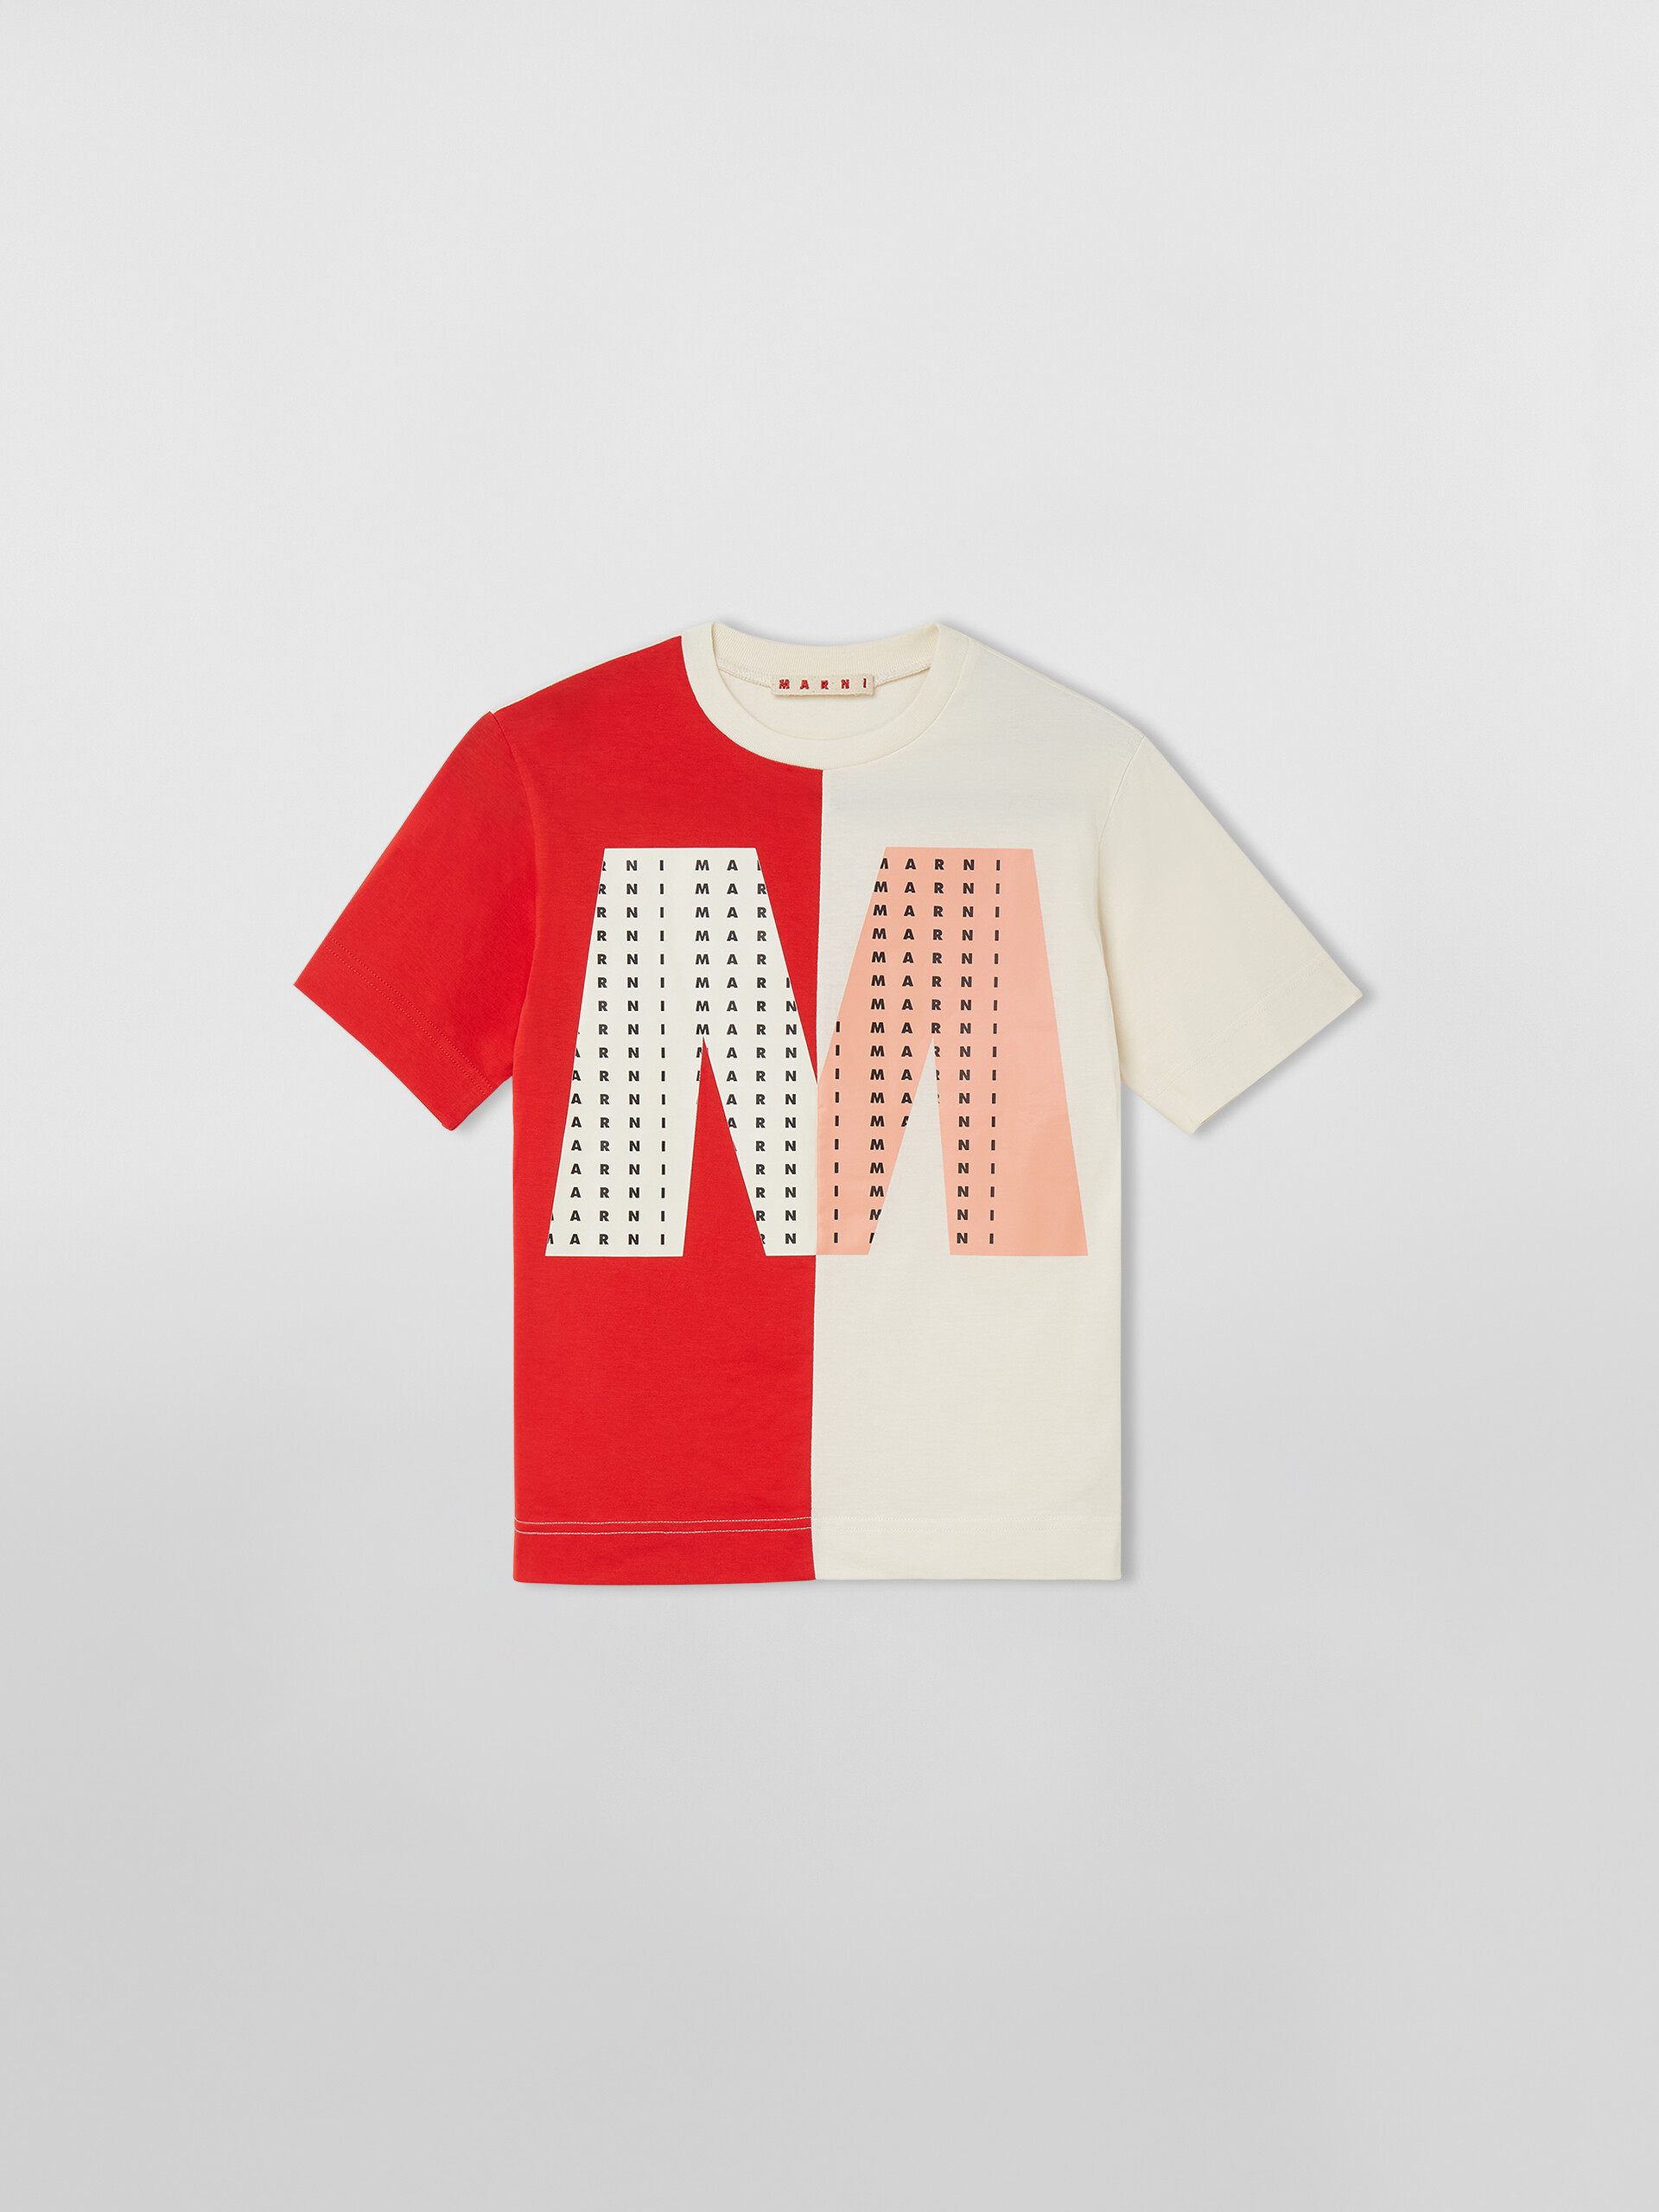 ZWEIFARBIGES T-SHIRT MIT GROSSEM „M“ AUF DER VORDERSEITE - T-shirts - Image 1